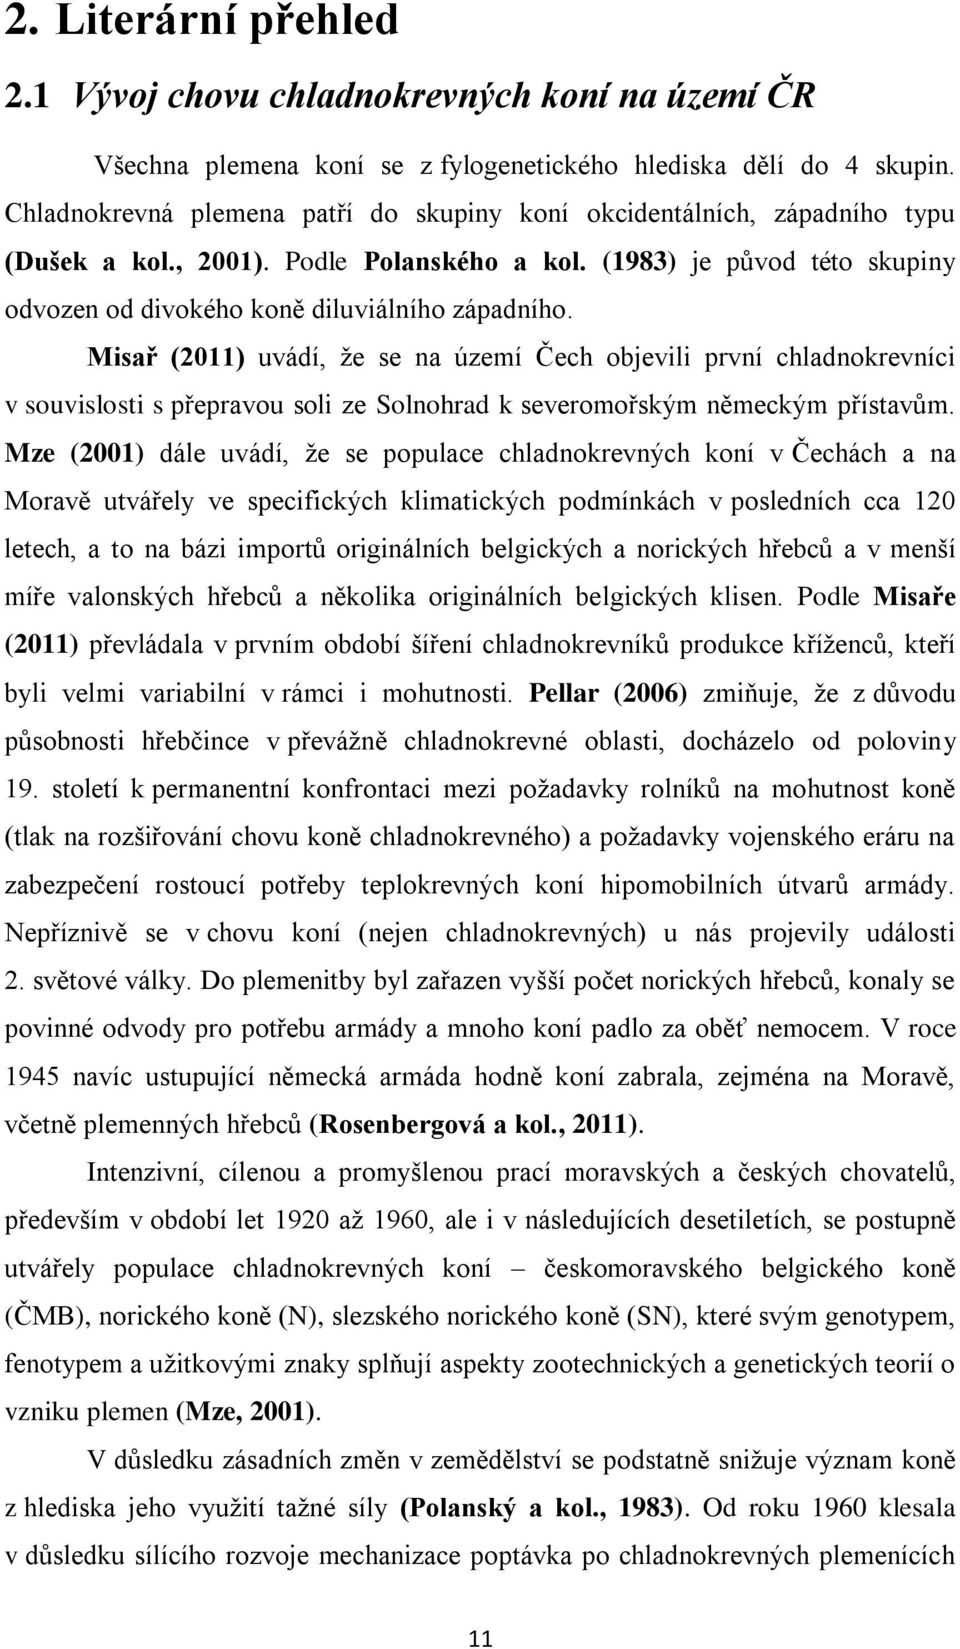 Misař (2011) uvádí, že se na území Čech objevili první chladnokrevníci v souvislosti s přepravou soli ze Solnohrad k severomořským německým přístavům.